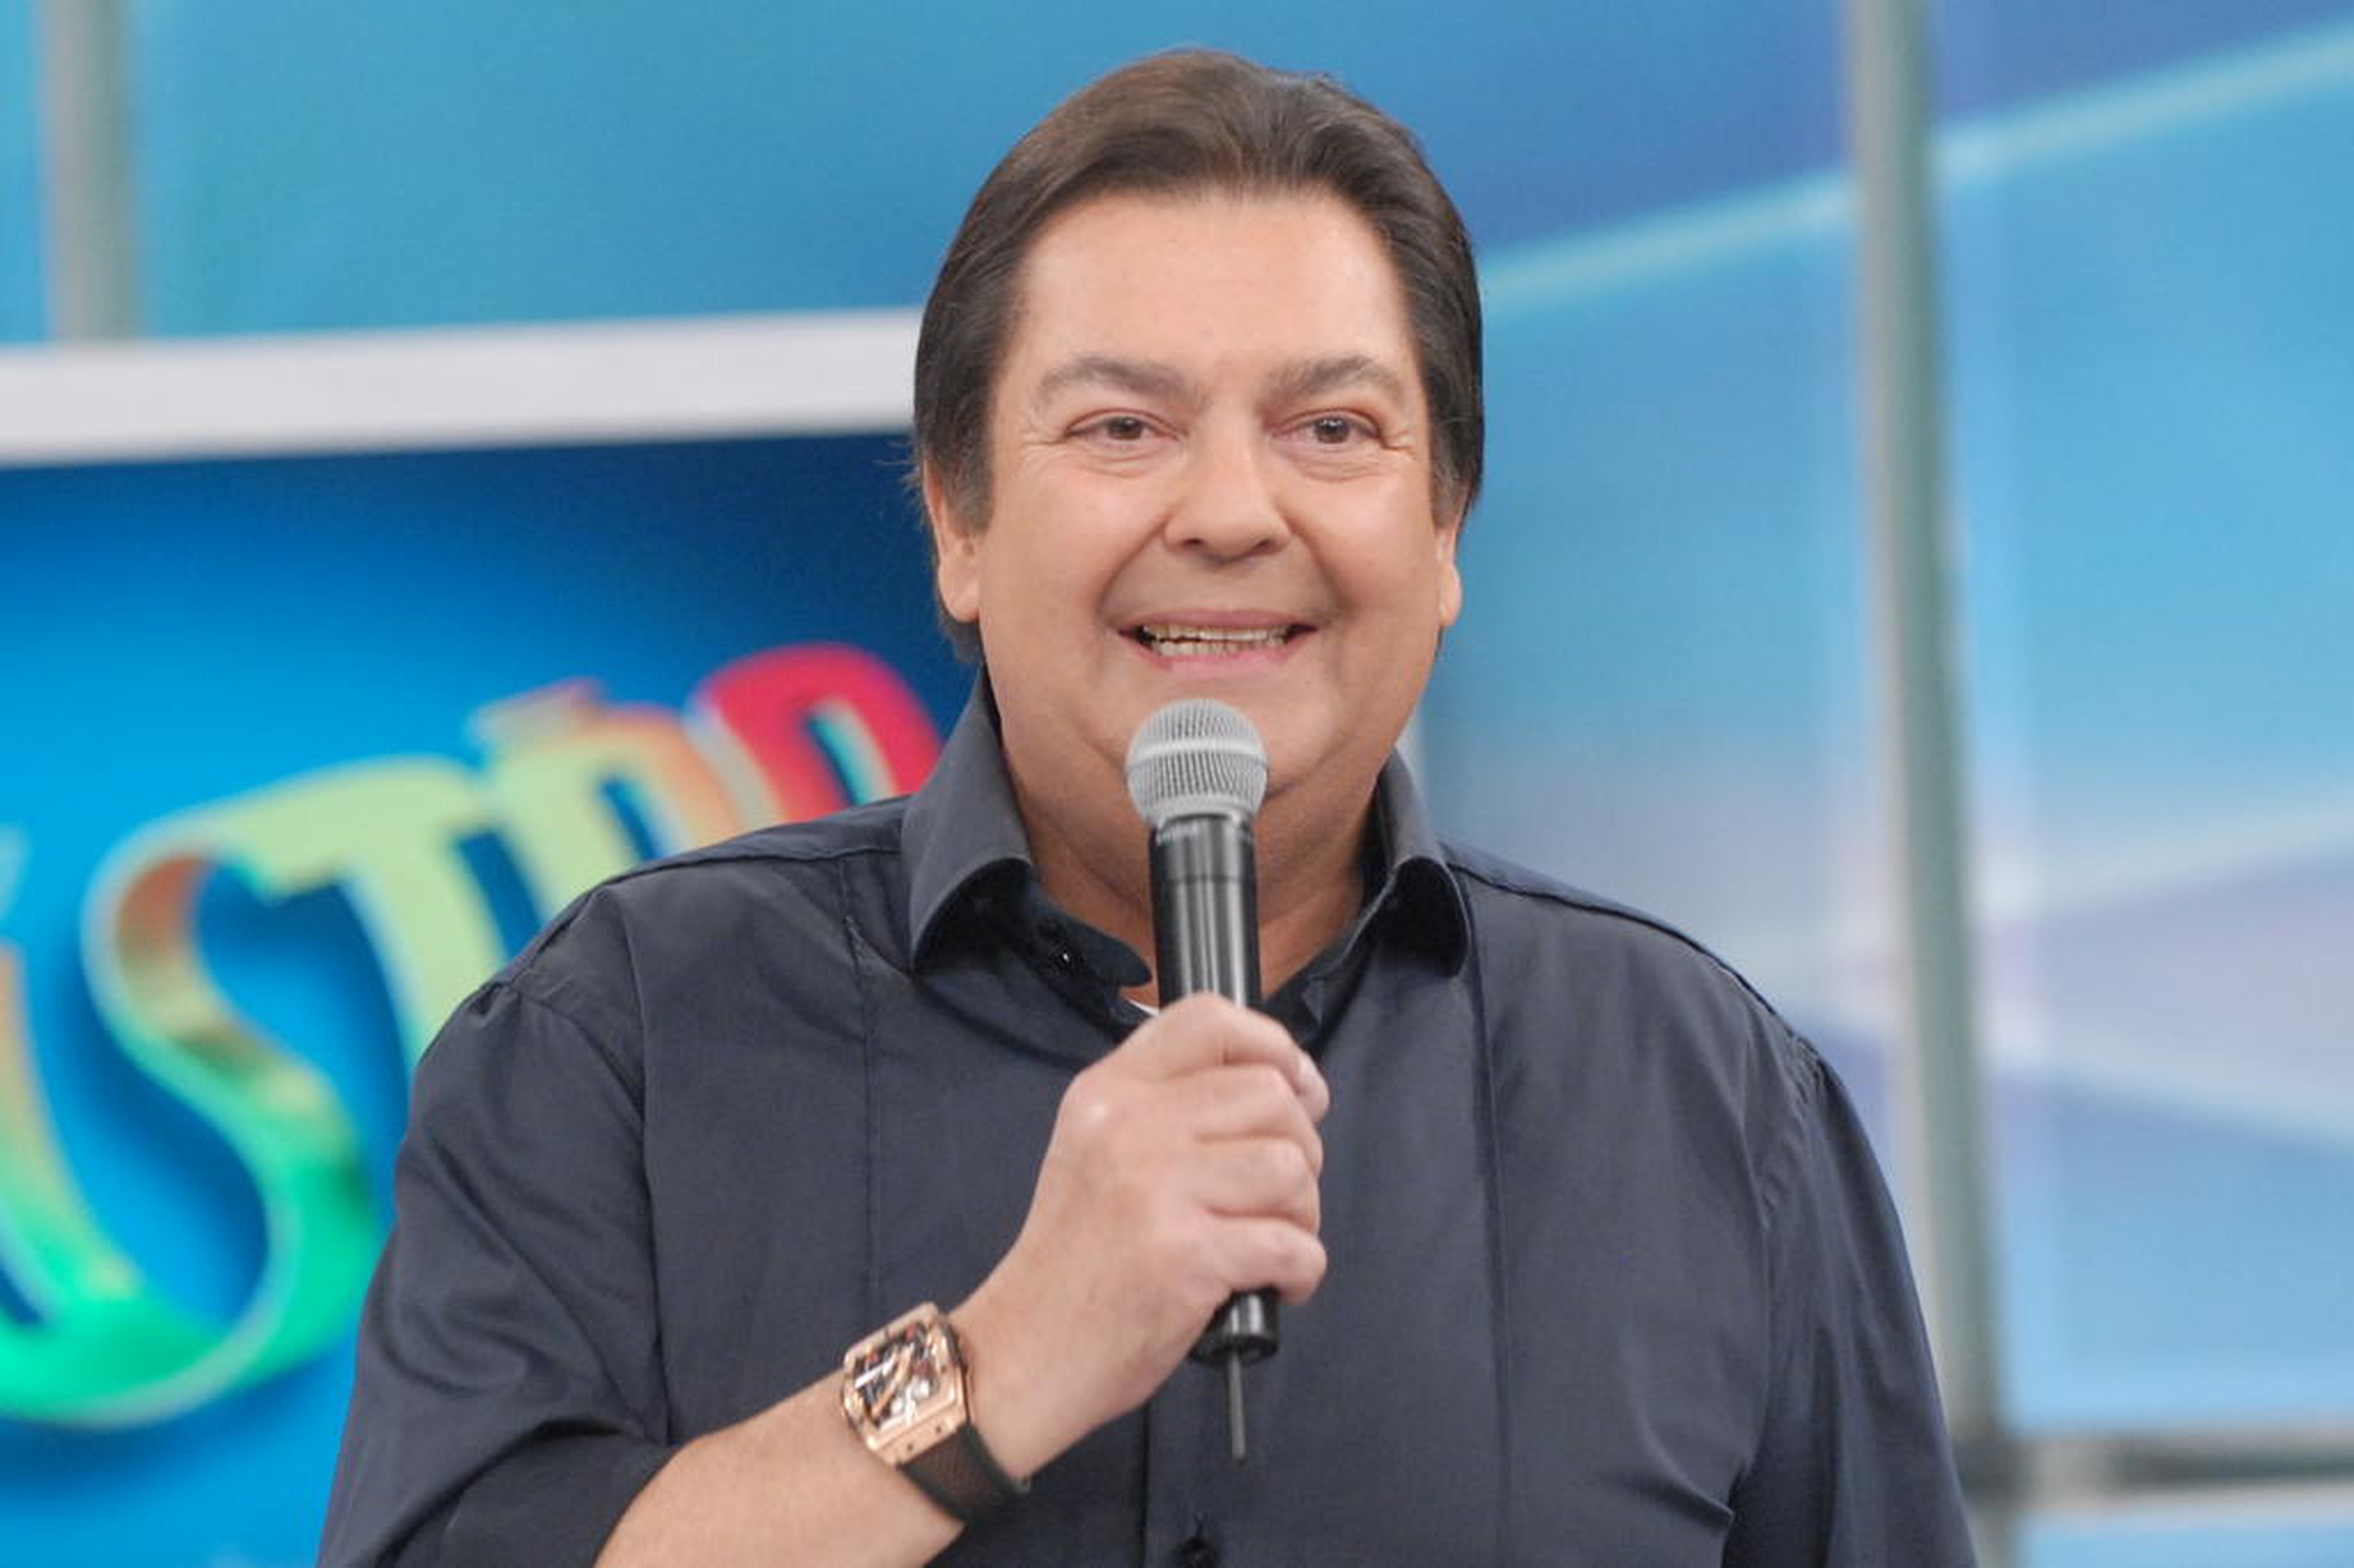 Zé Paulo Cardeal/TV Globo,Divulgação